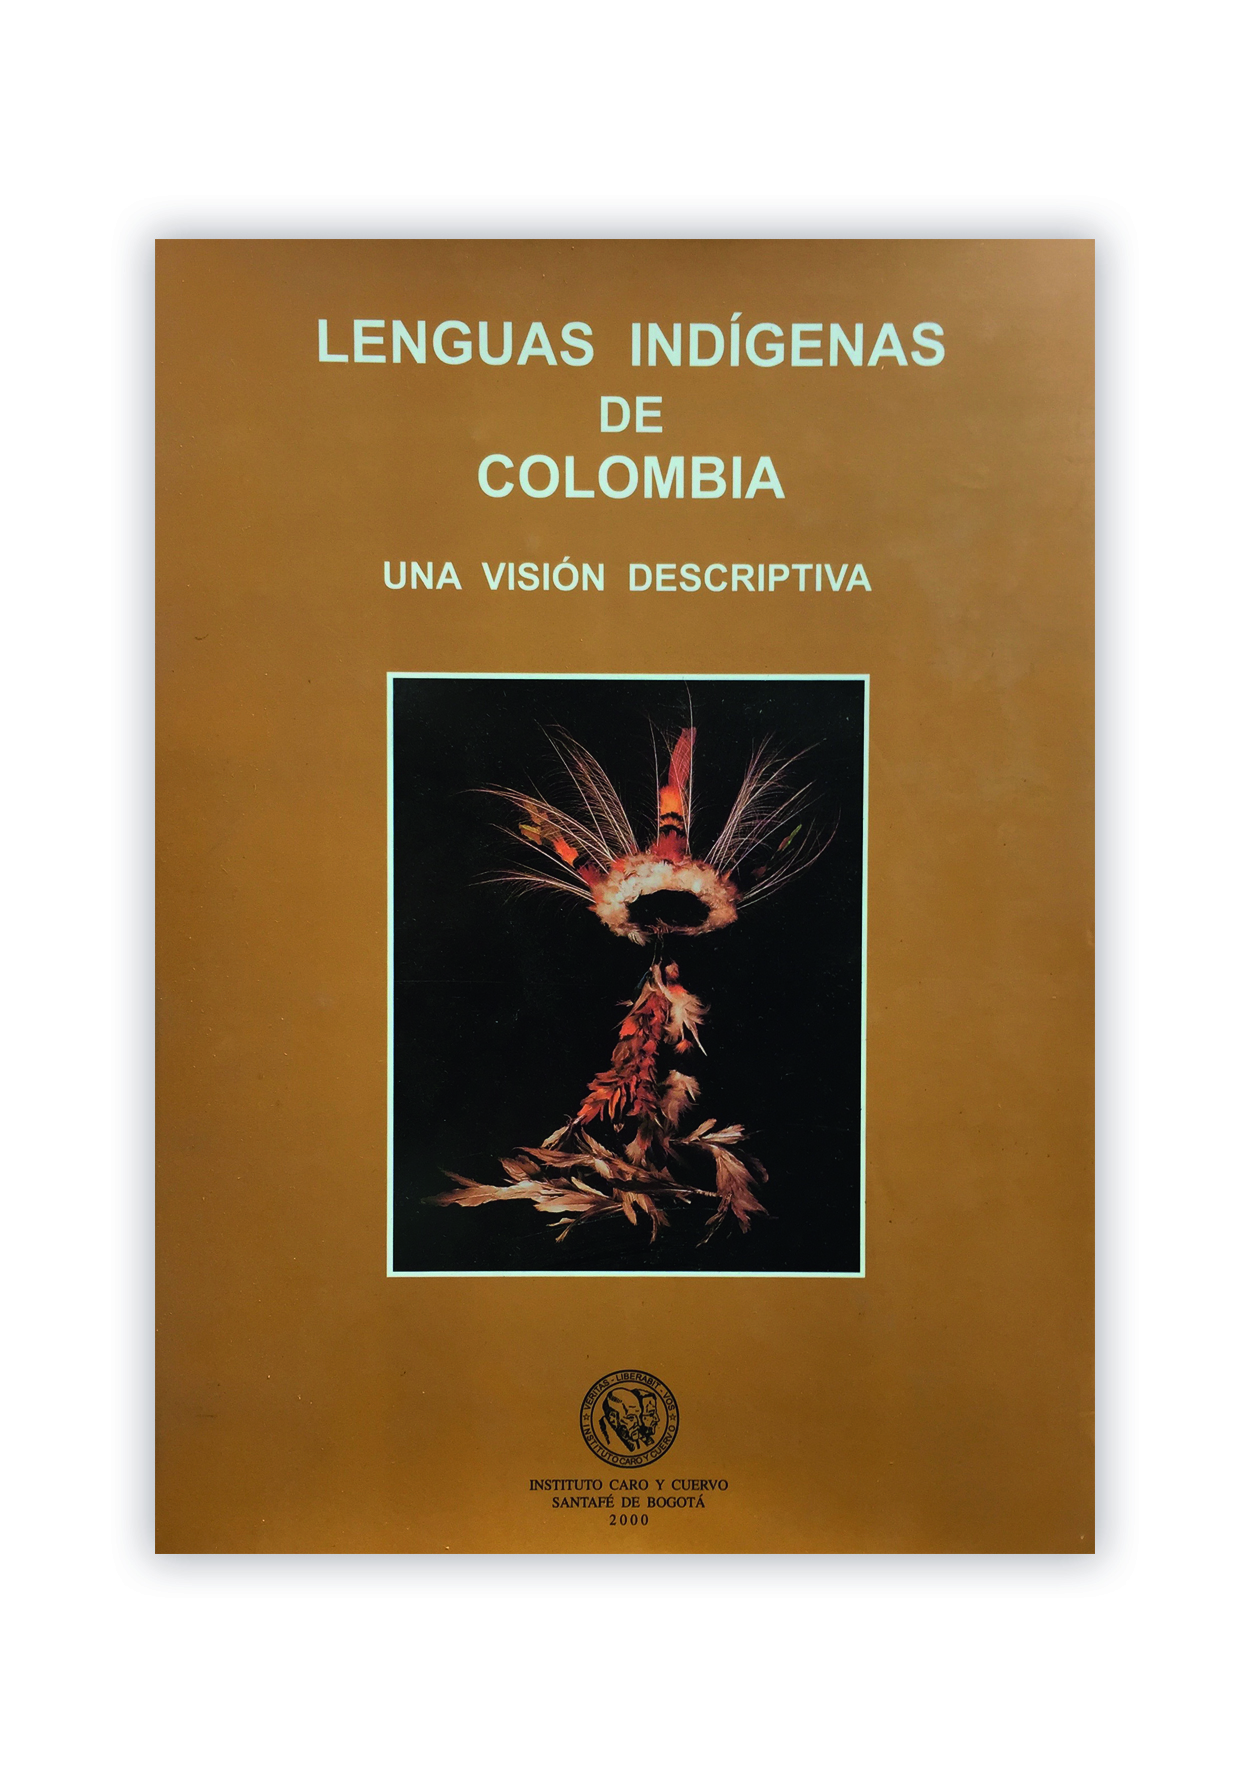 Lenguas indígenas de Colombia: una visión descriptiva